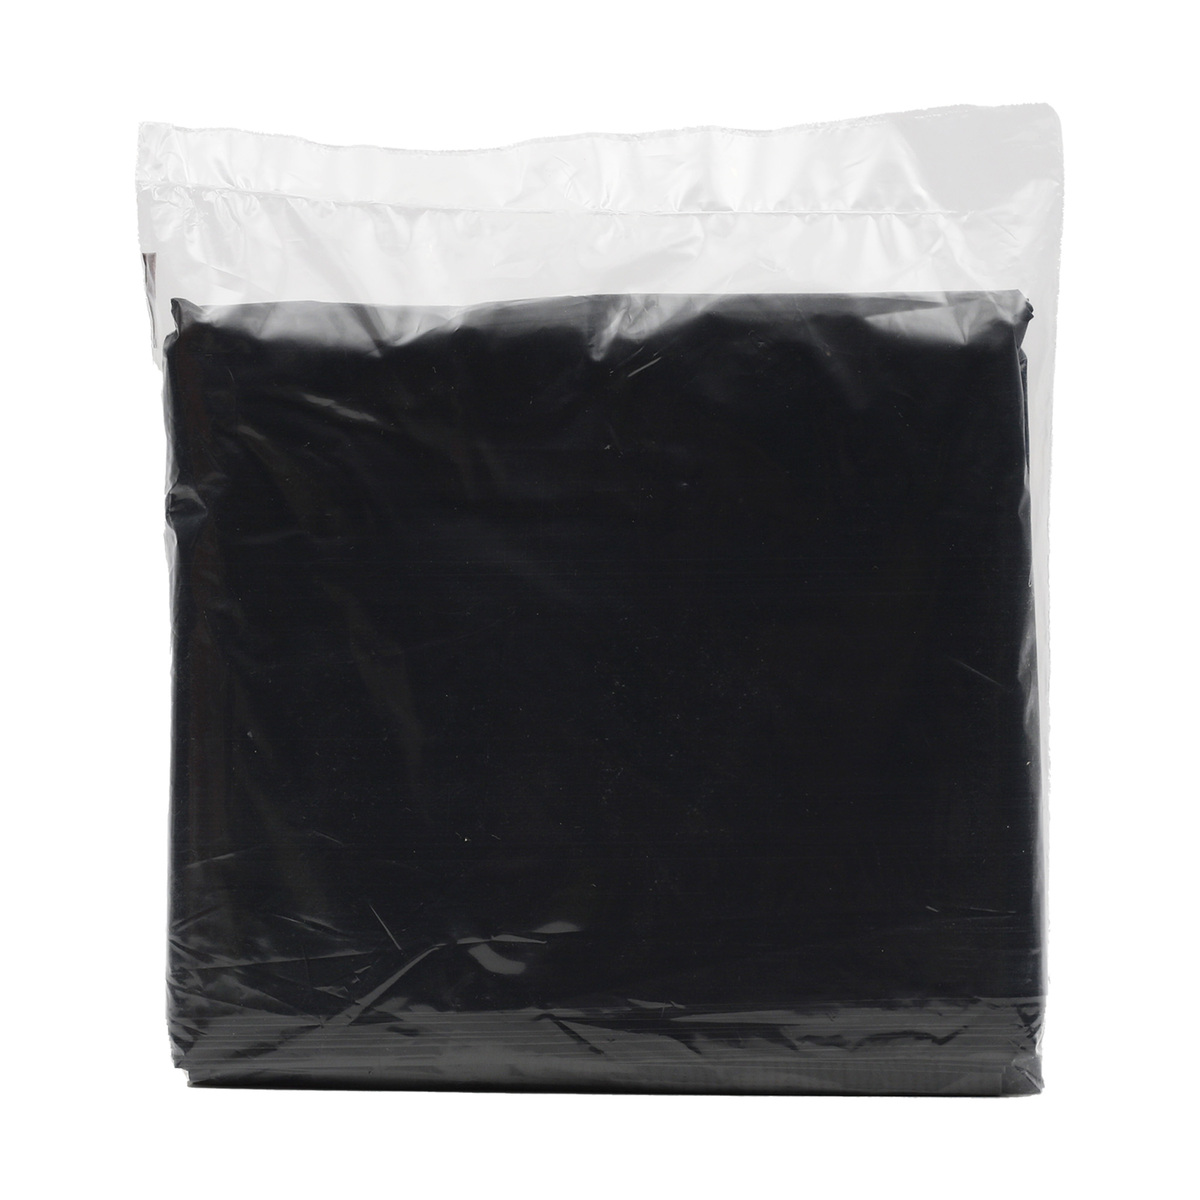 Delmon Garbage Bag 50 Gallons 15pcs Online at Best Price | Garbage Bags ...